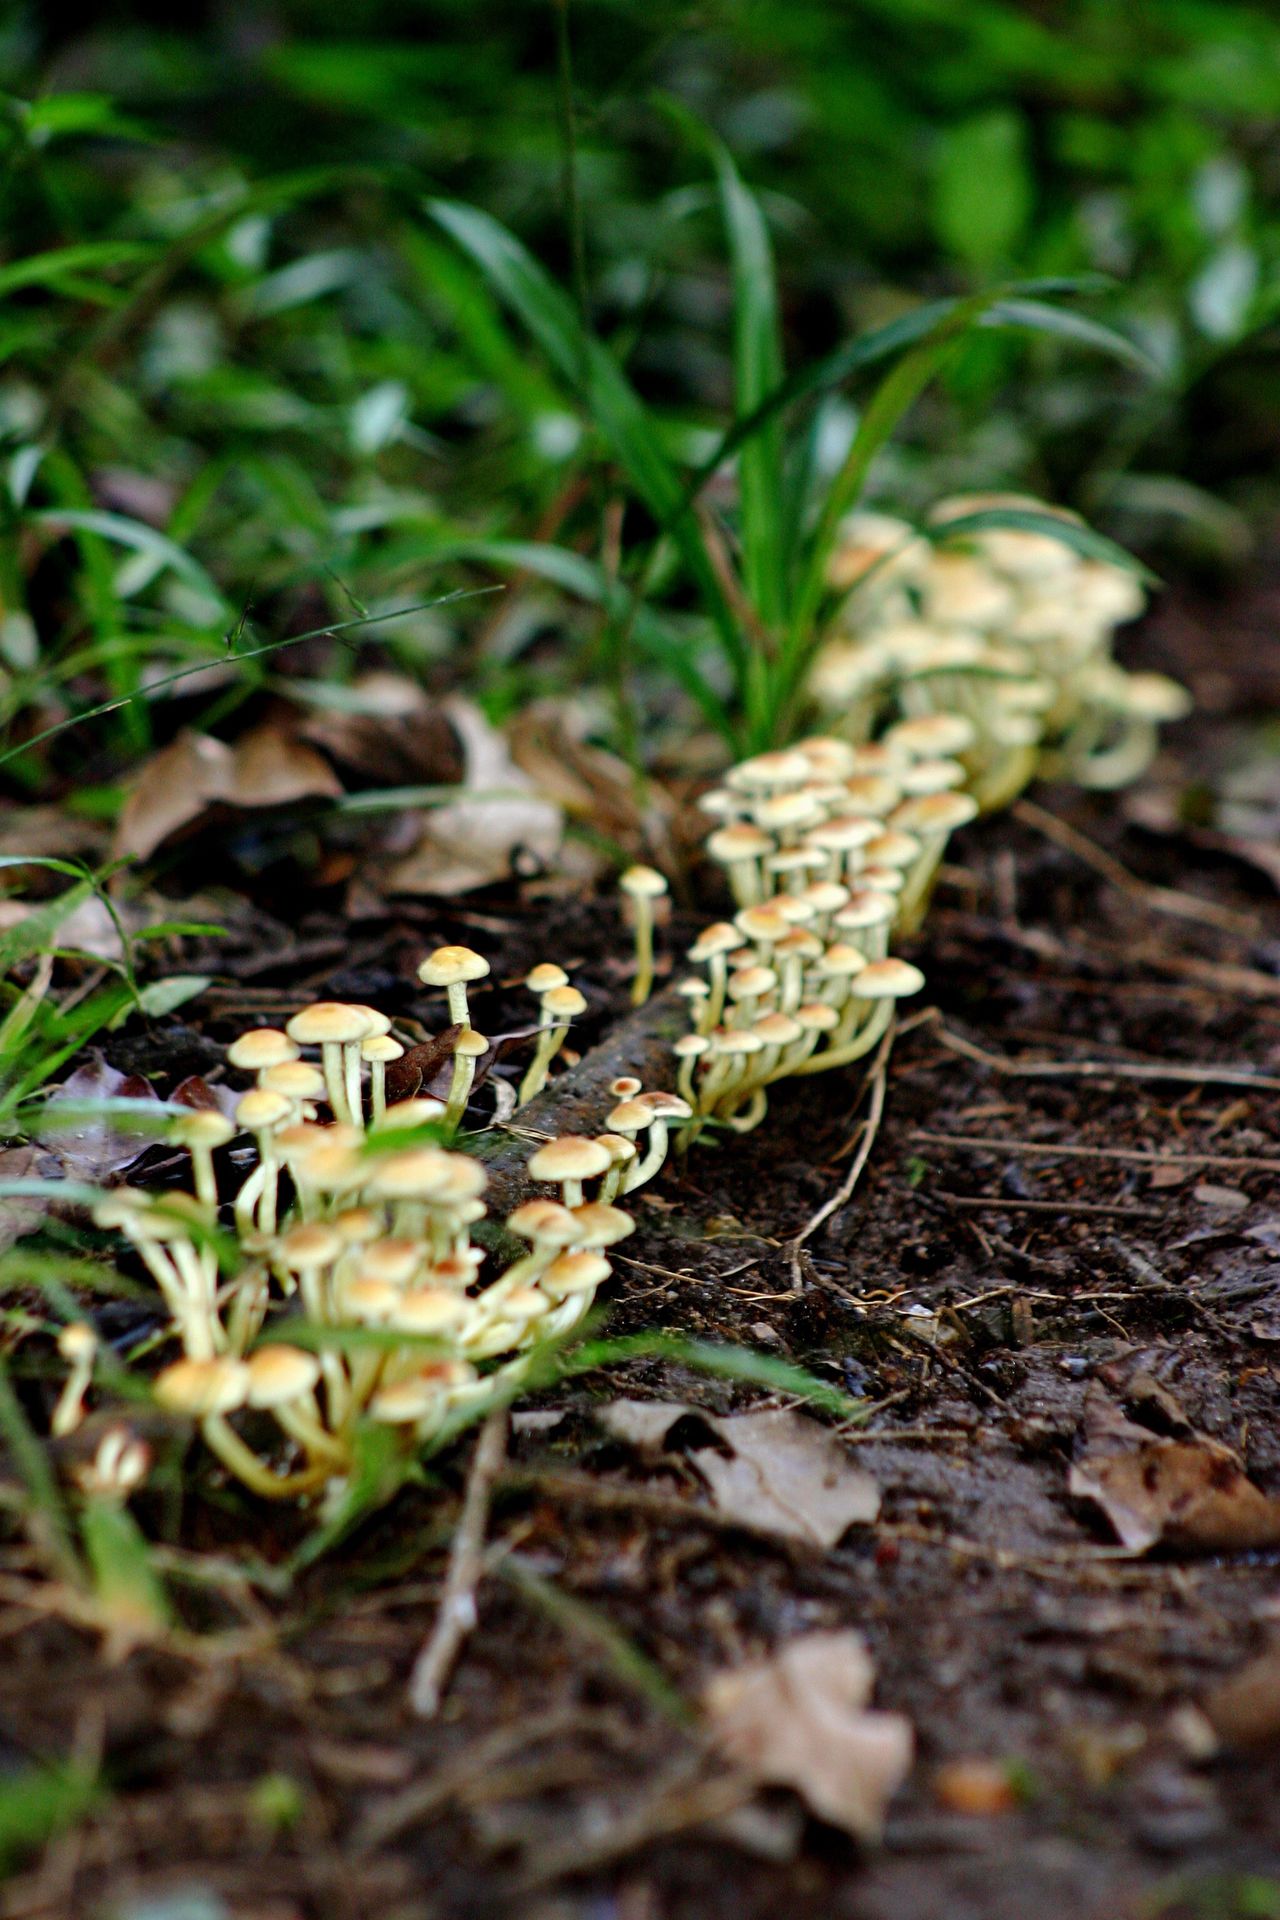 Delicate mushrooms